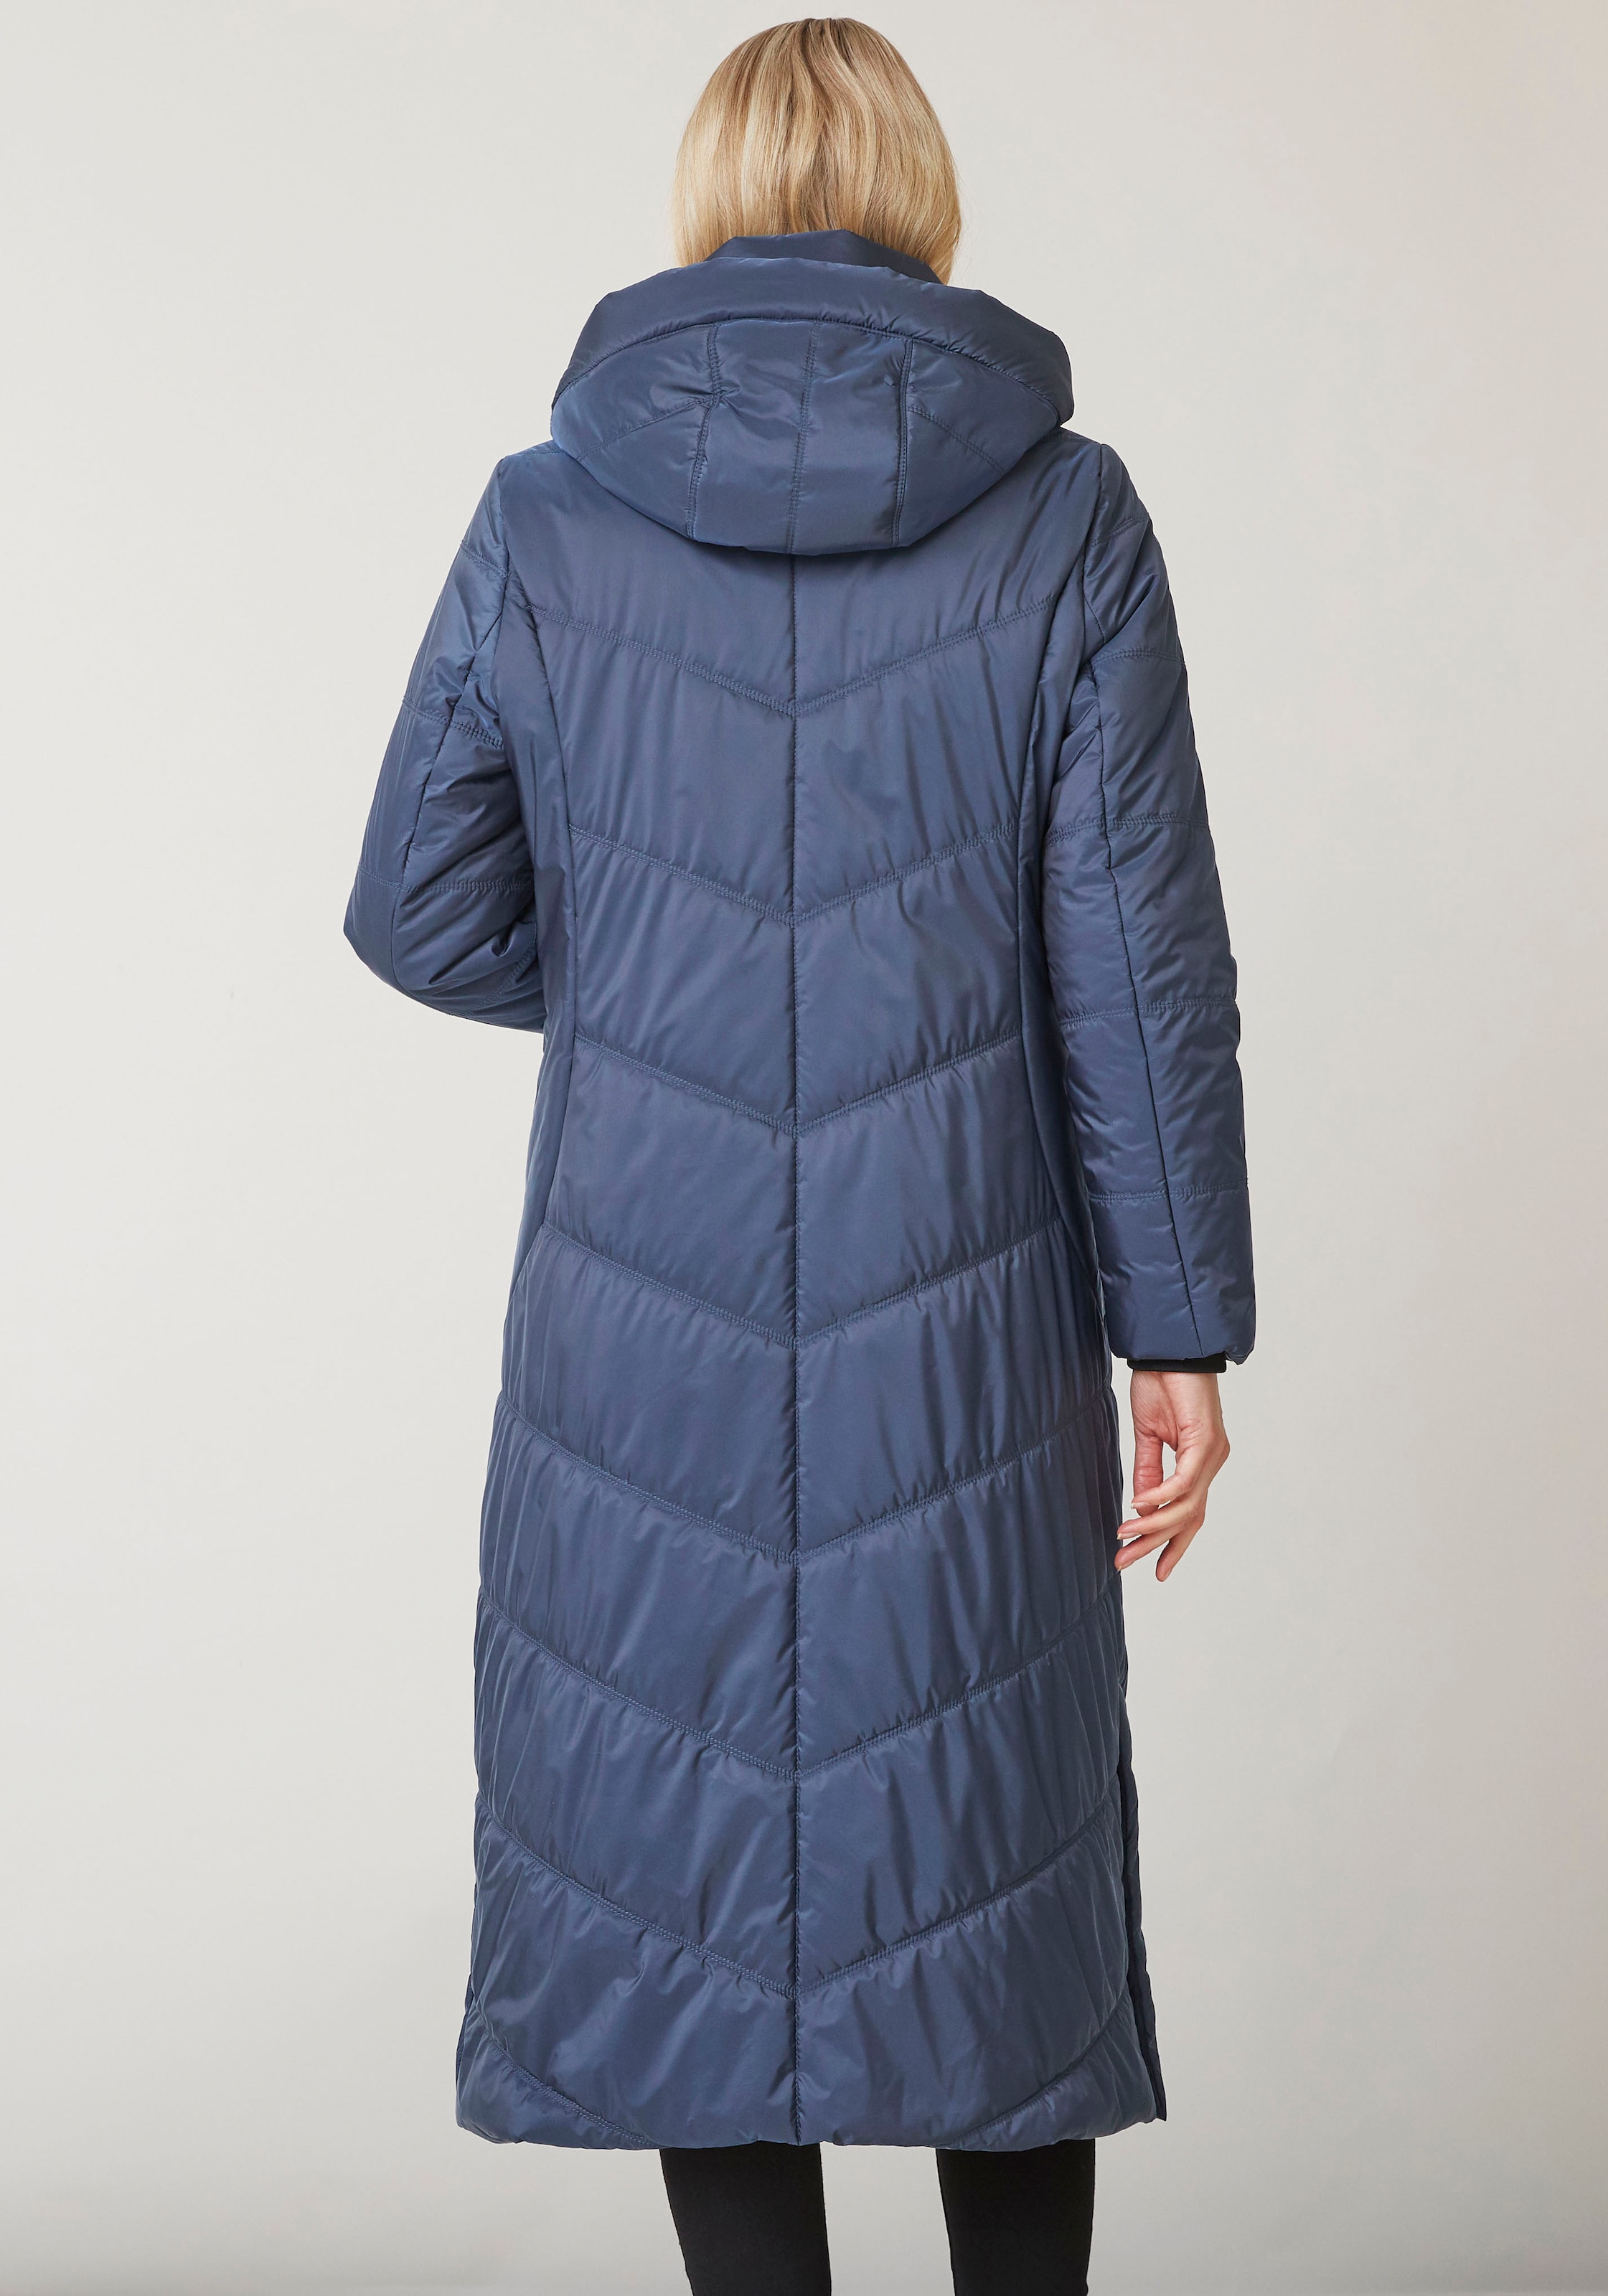 Junge Danmark Winterjacke »Ina«, mit Kapuze, mit seitlichen Reißverschlusstaschen